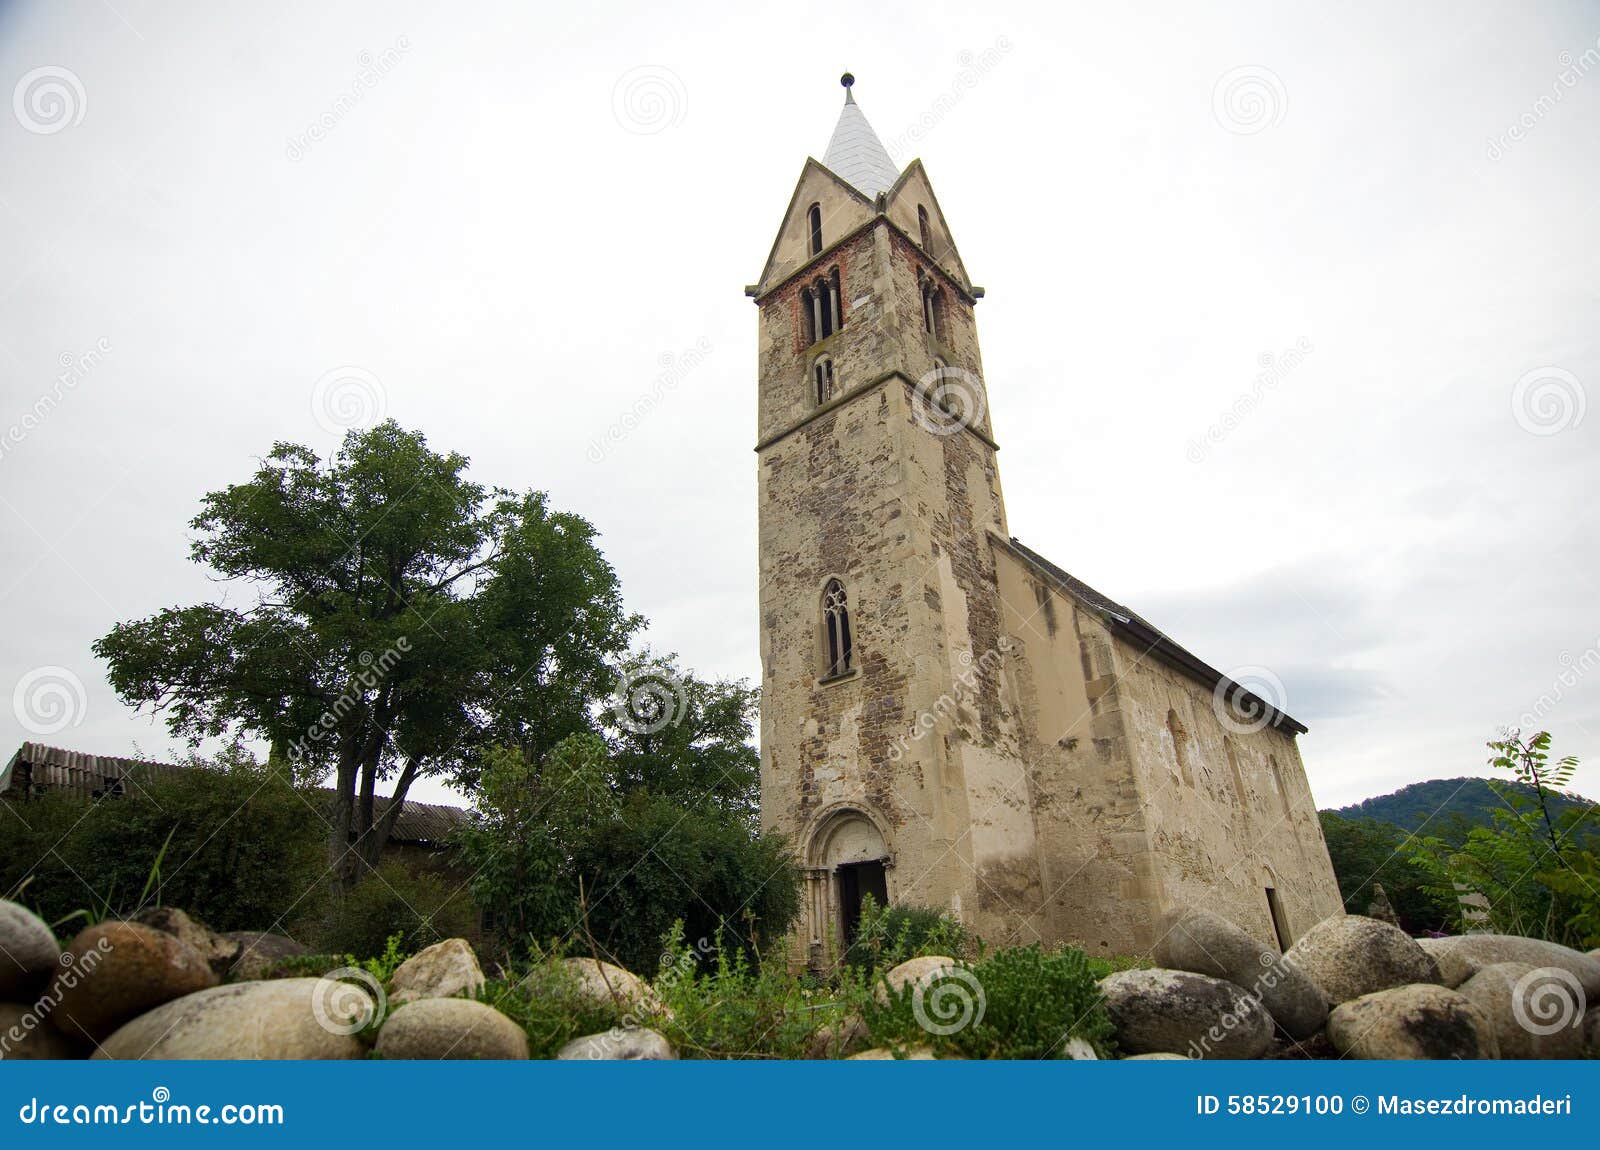 romania - santamaria-orlea church